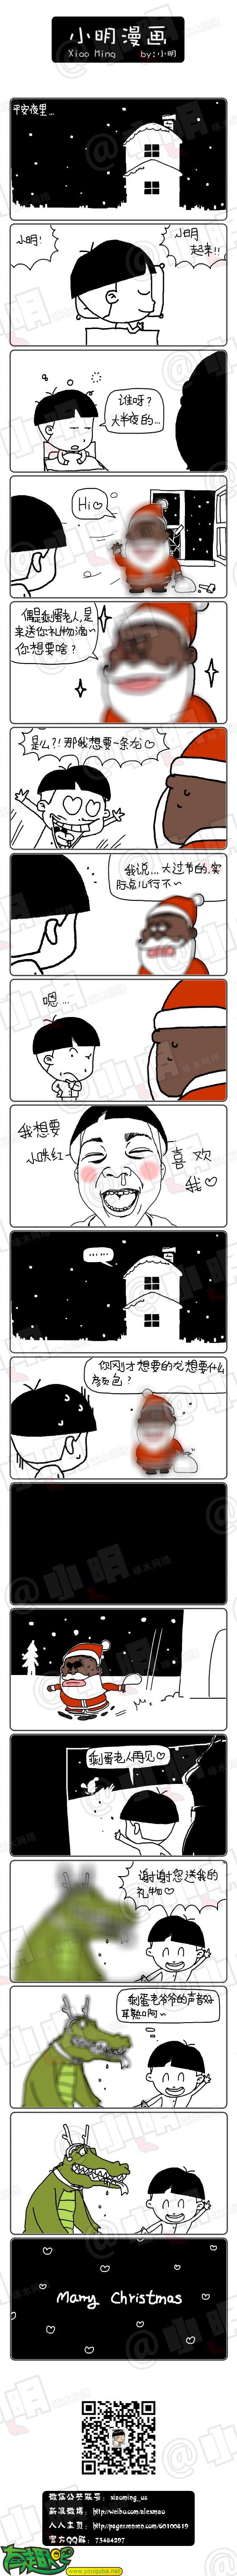 小明系列漫画：圣诞礼物